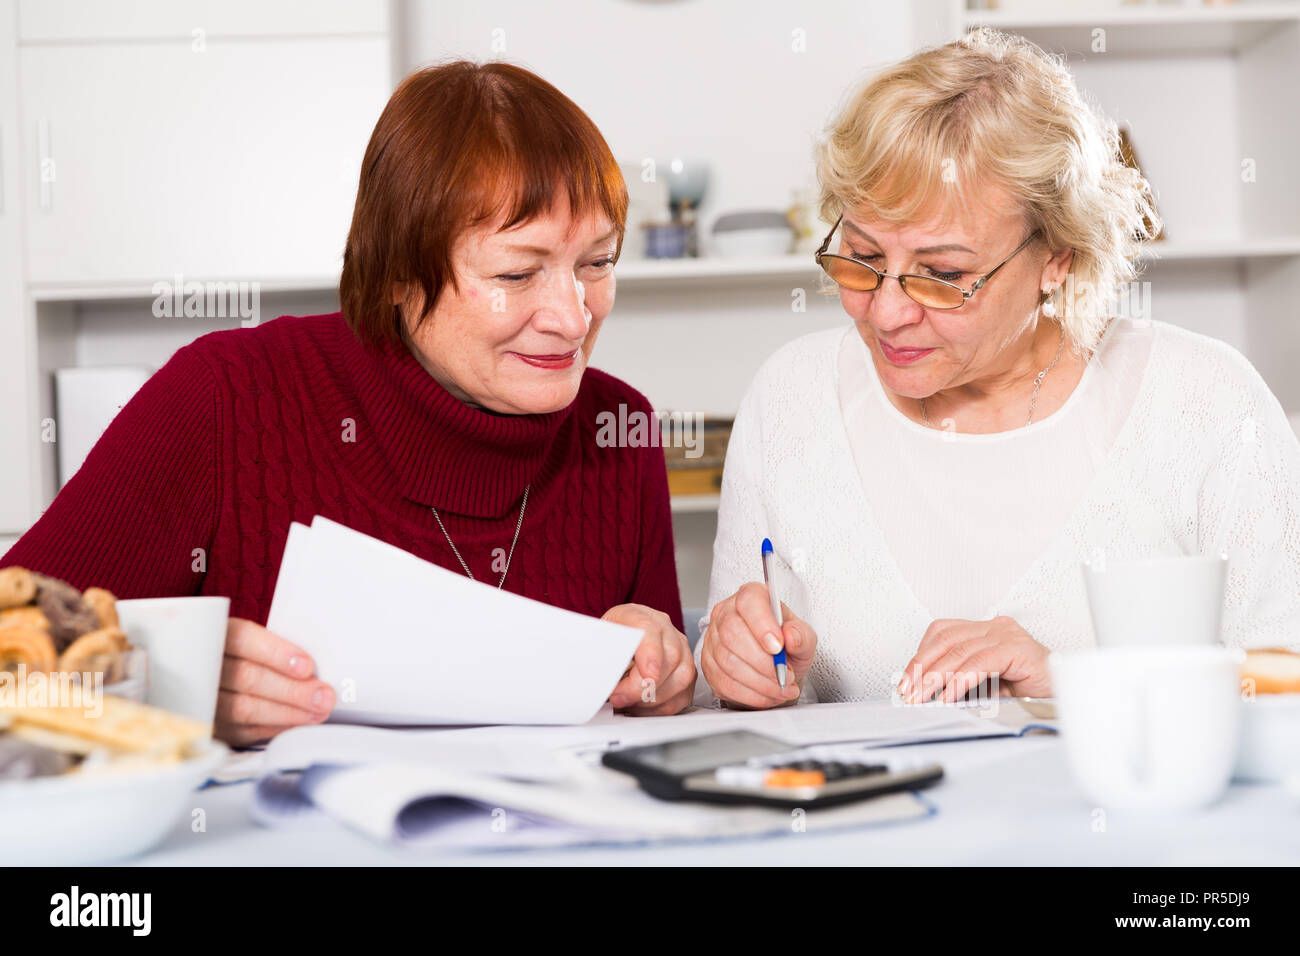 Freundliche ältere Frauen am Küchentisch sitzen Arbeiten mit Dokumenten Stockfoto